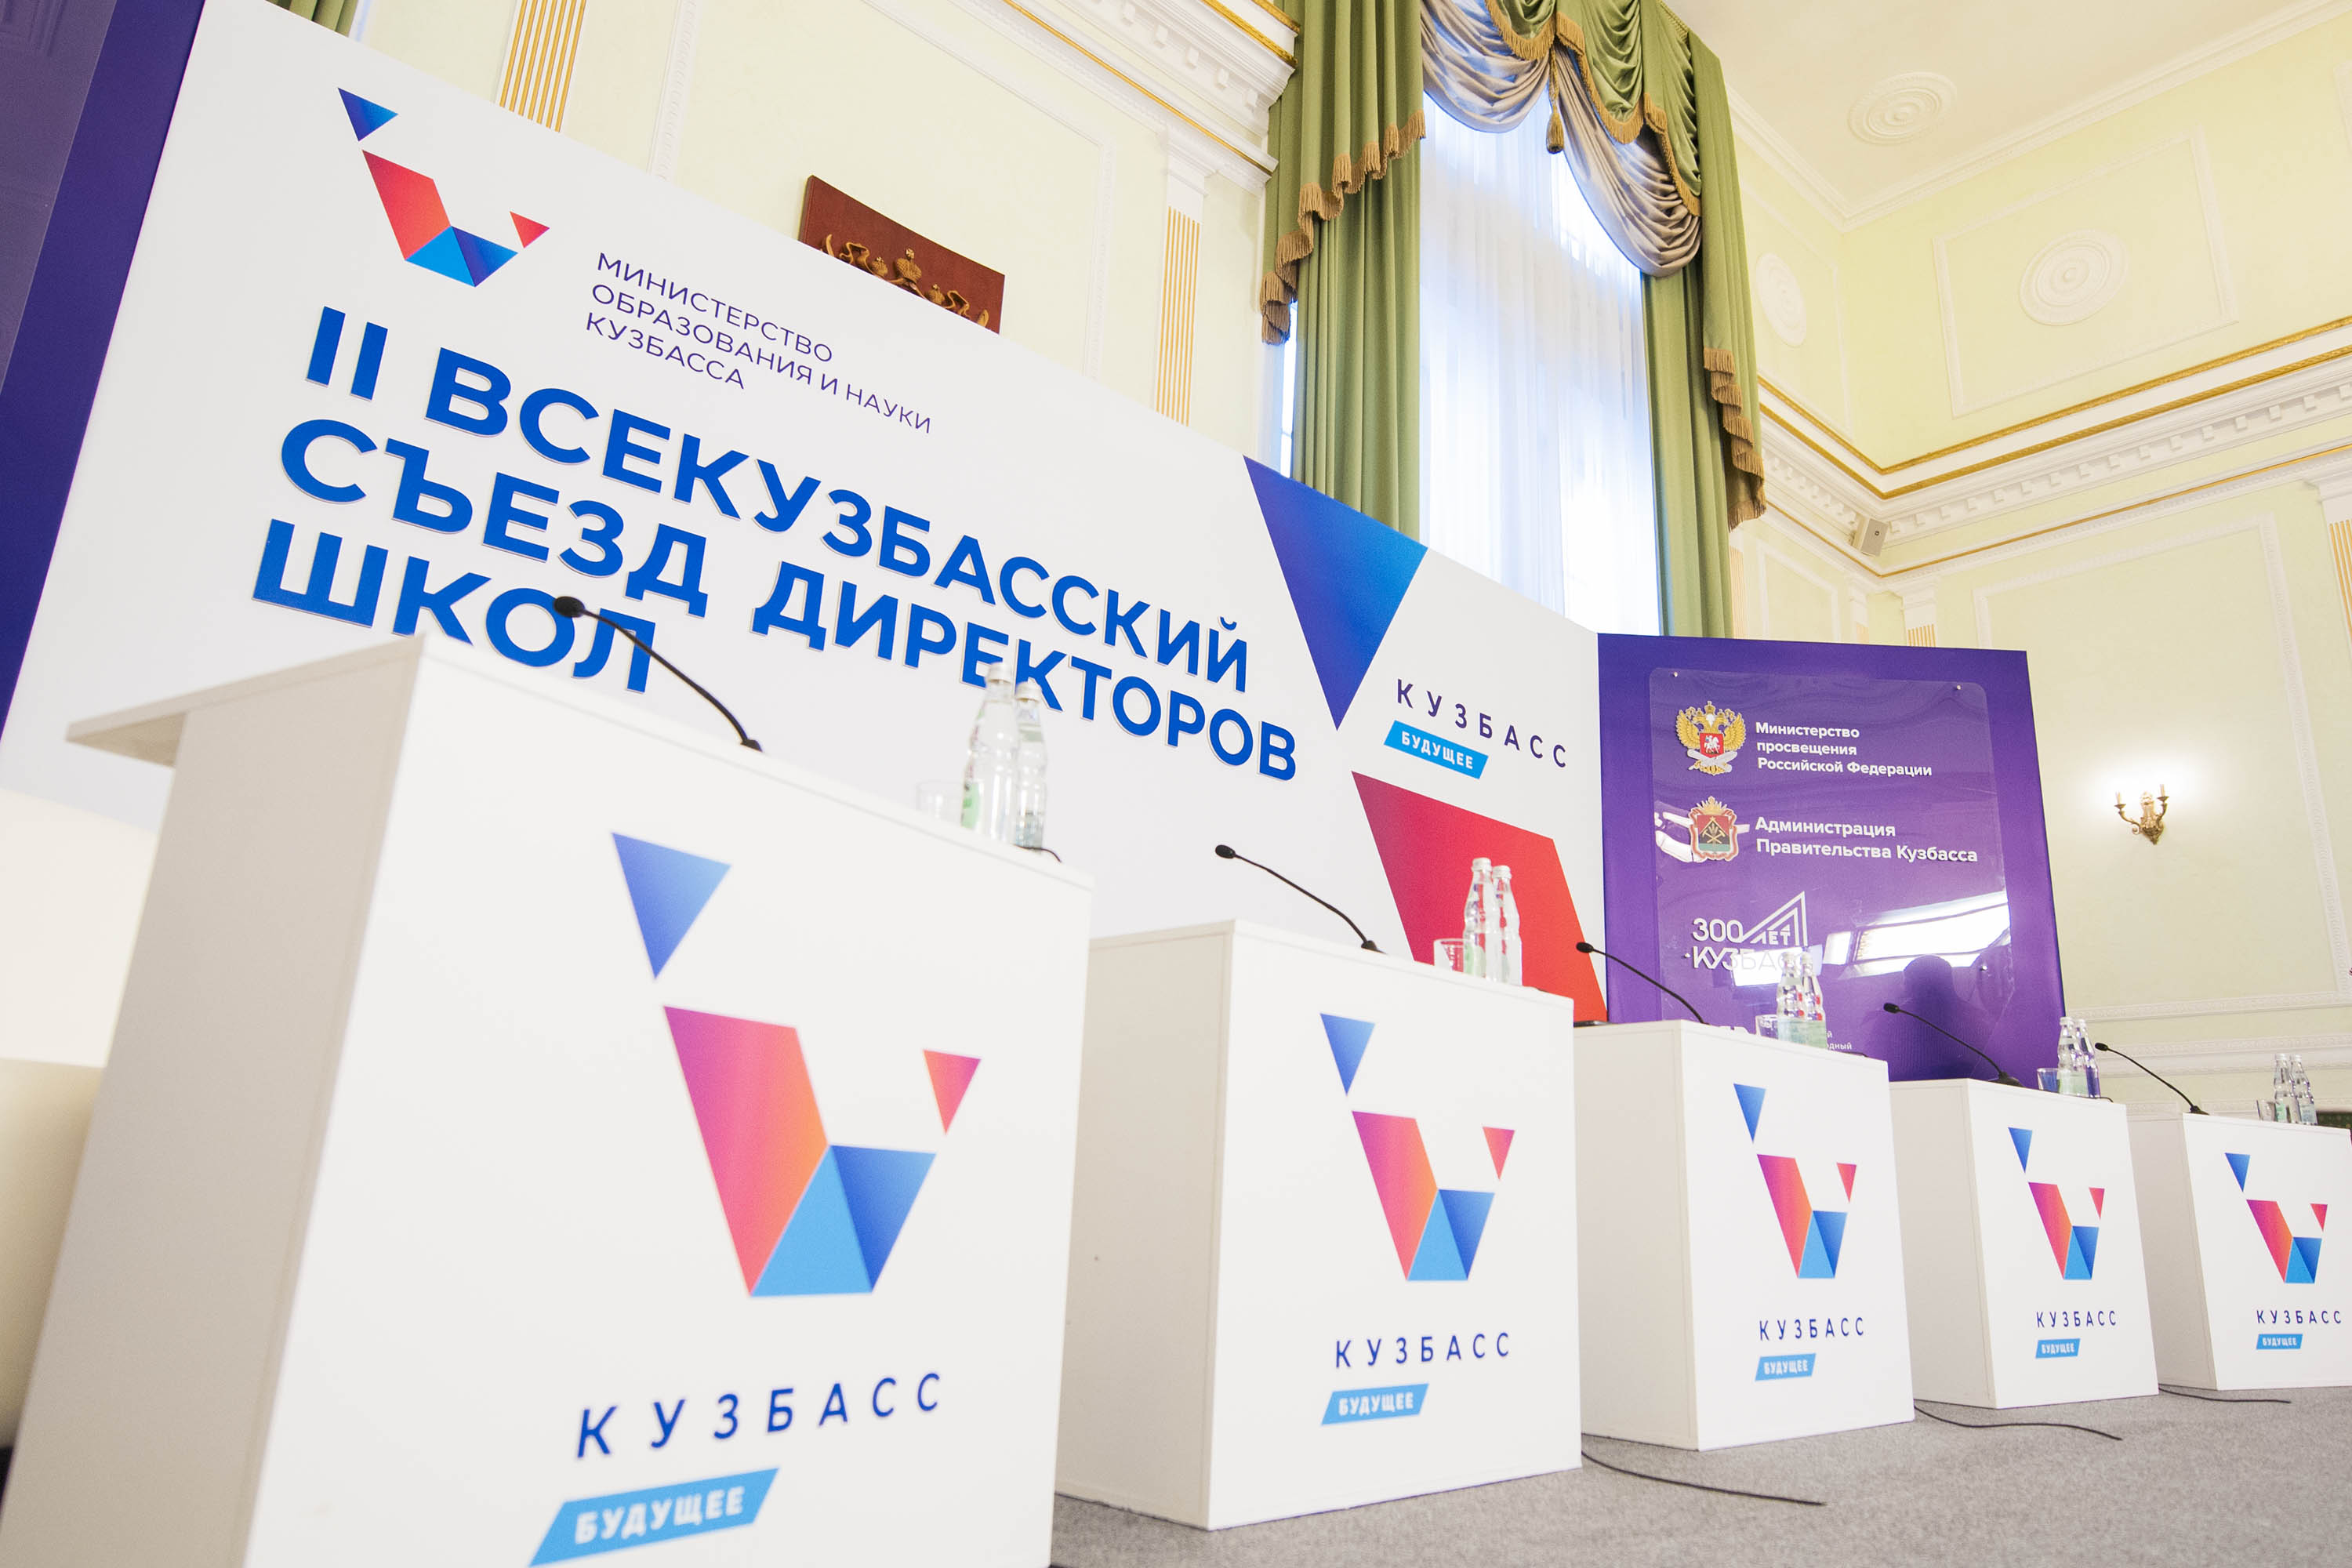 Около 8 тысяч человек стали участниками II Всекузбасского съезда директоров школ в режиме онлайн